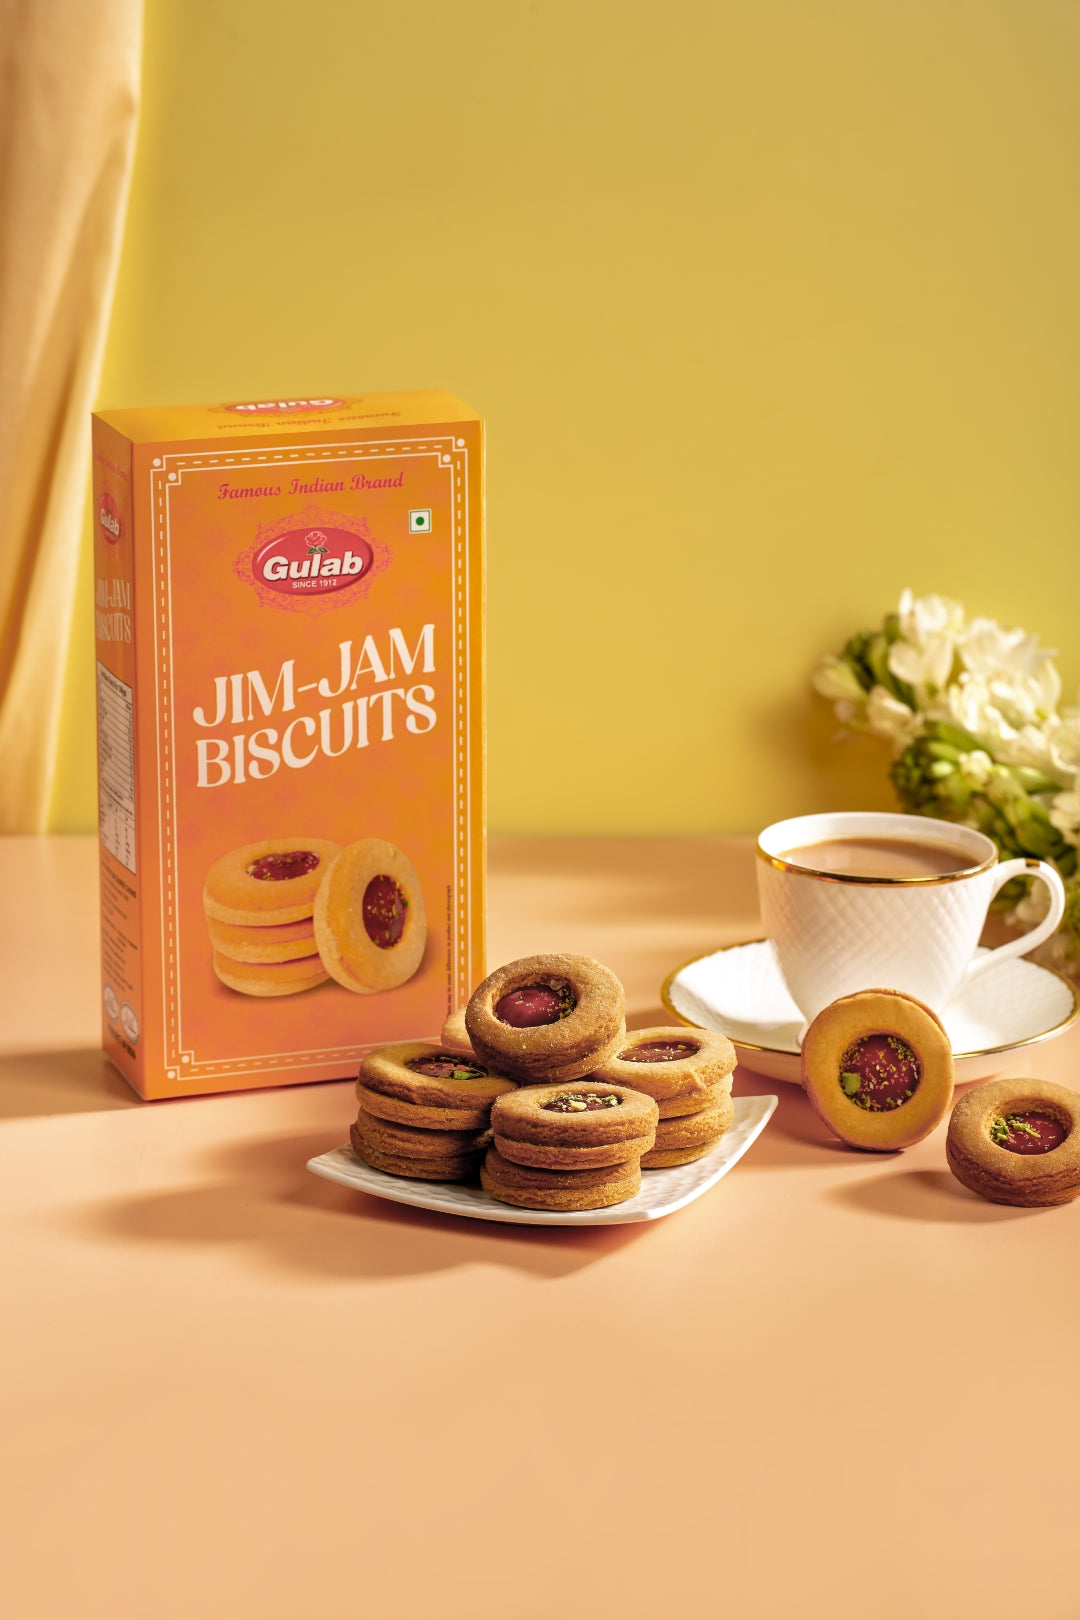 Jim Jam Cookies